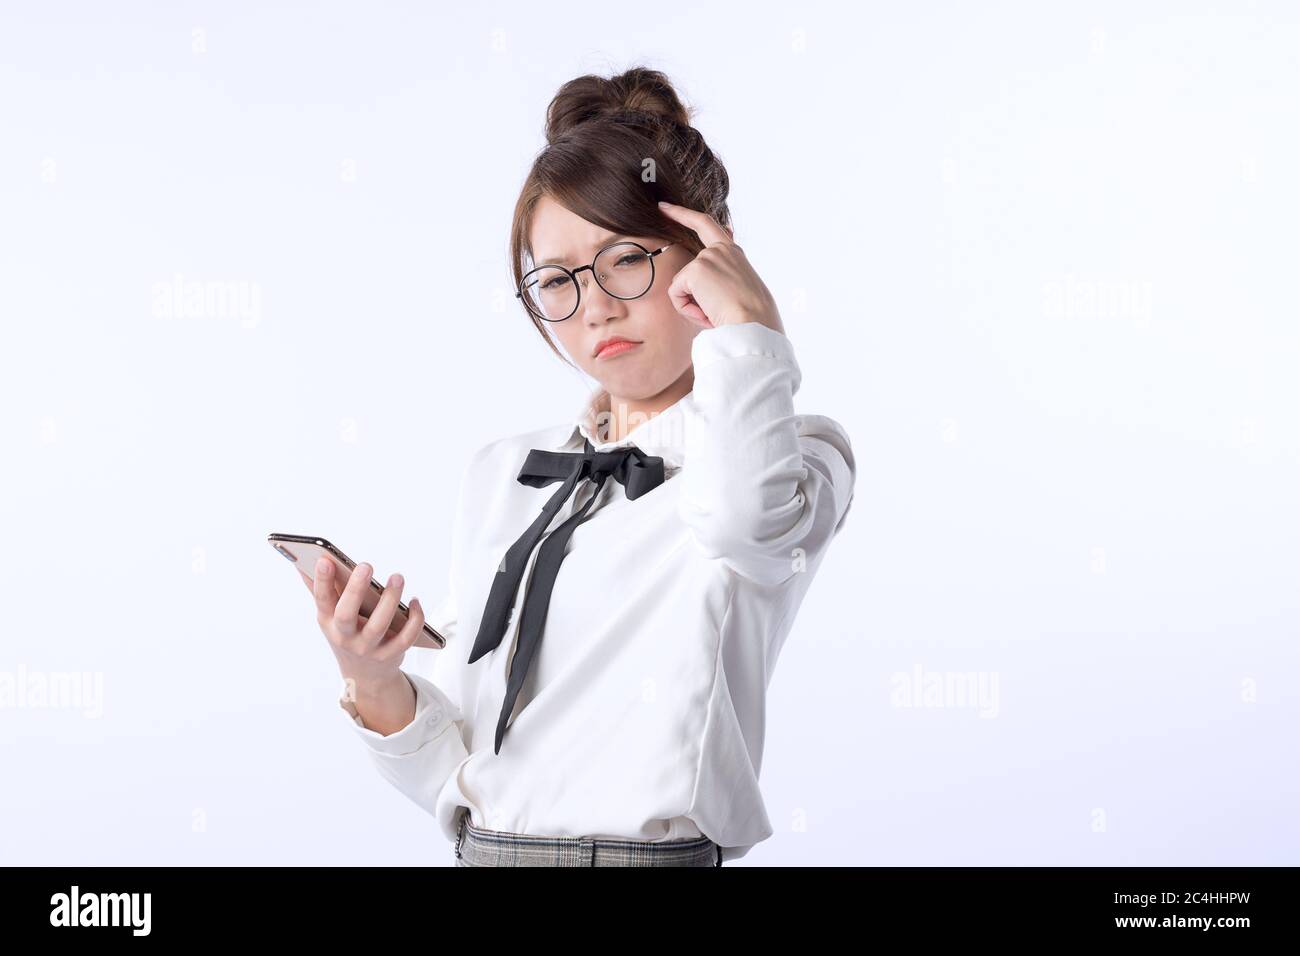 Porträt eines jungen Mädchens, das ein Handy hält und sich um etwas mit soliertem weißen Hintergrund sorgt. Negative menschliche Emotion Gesichtsausdruck f Stockfoto